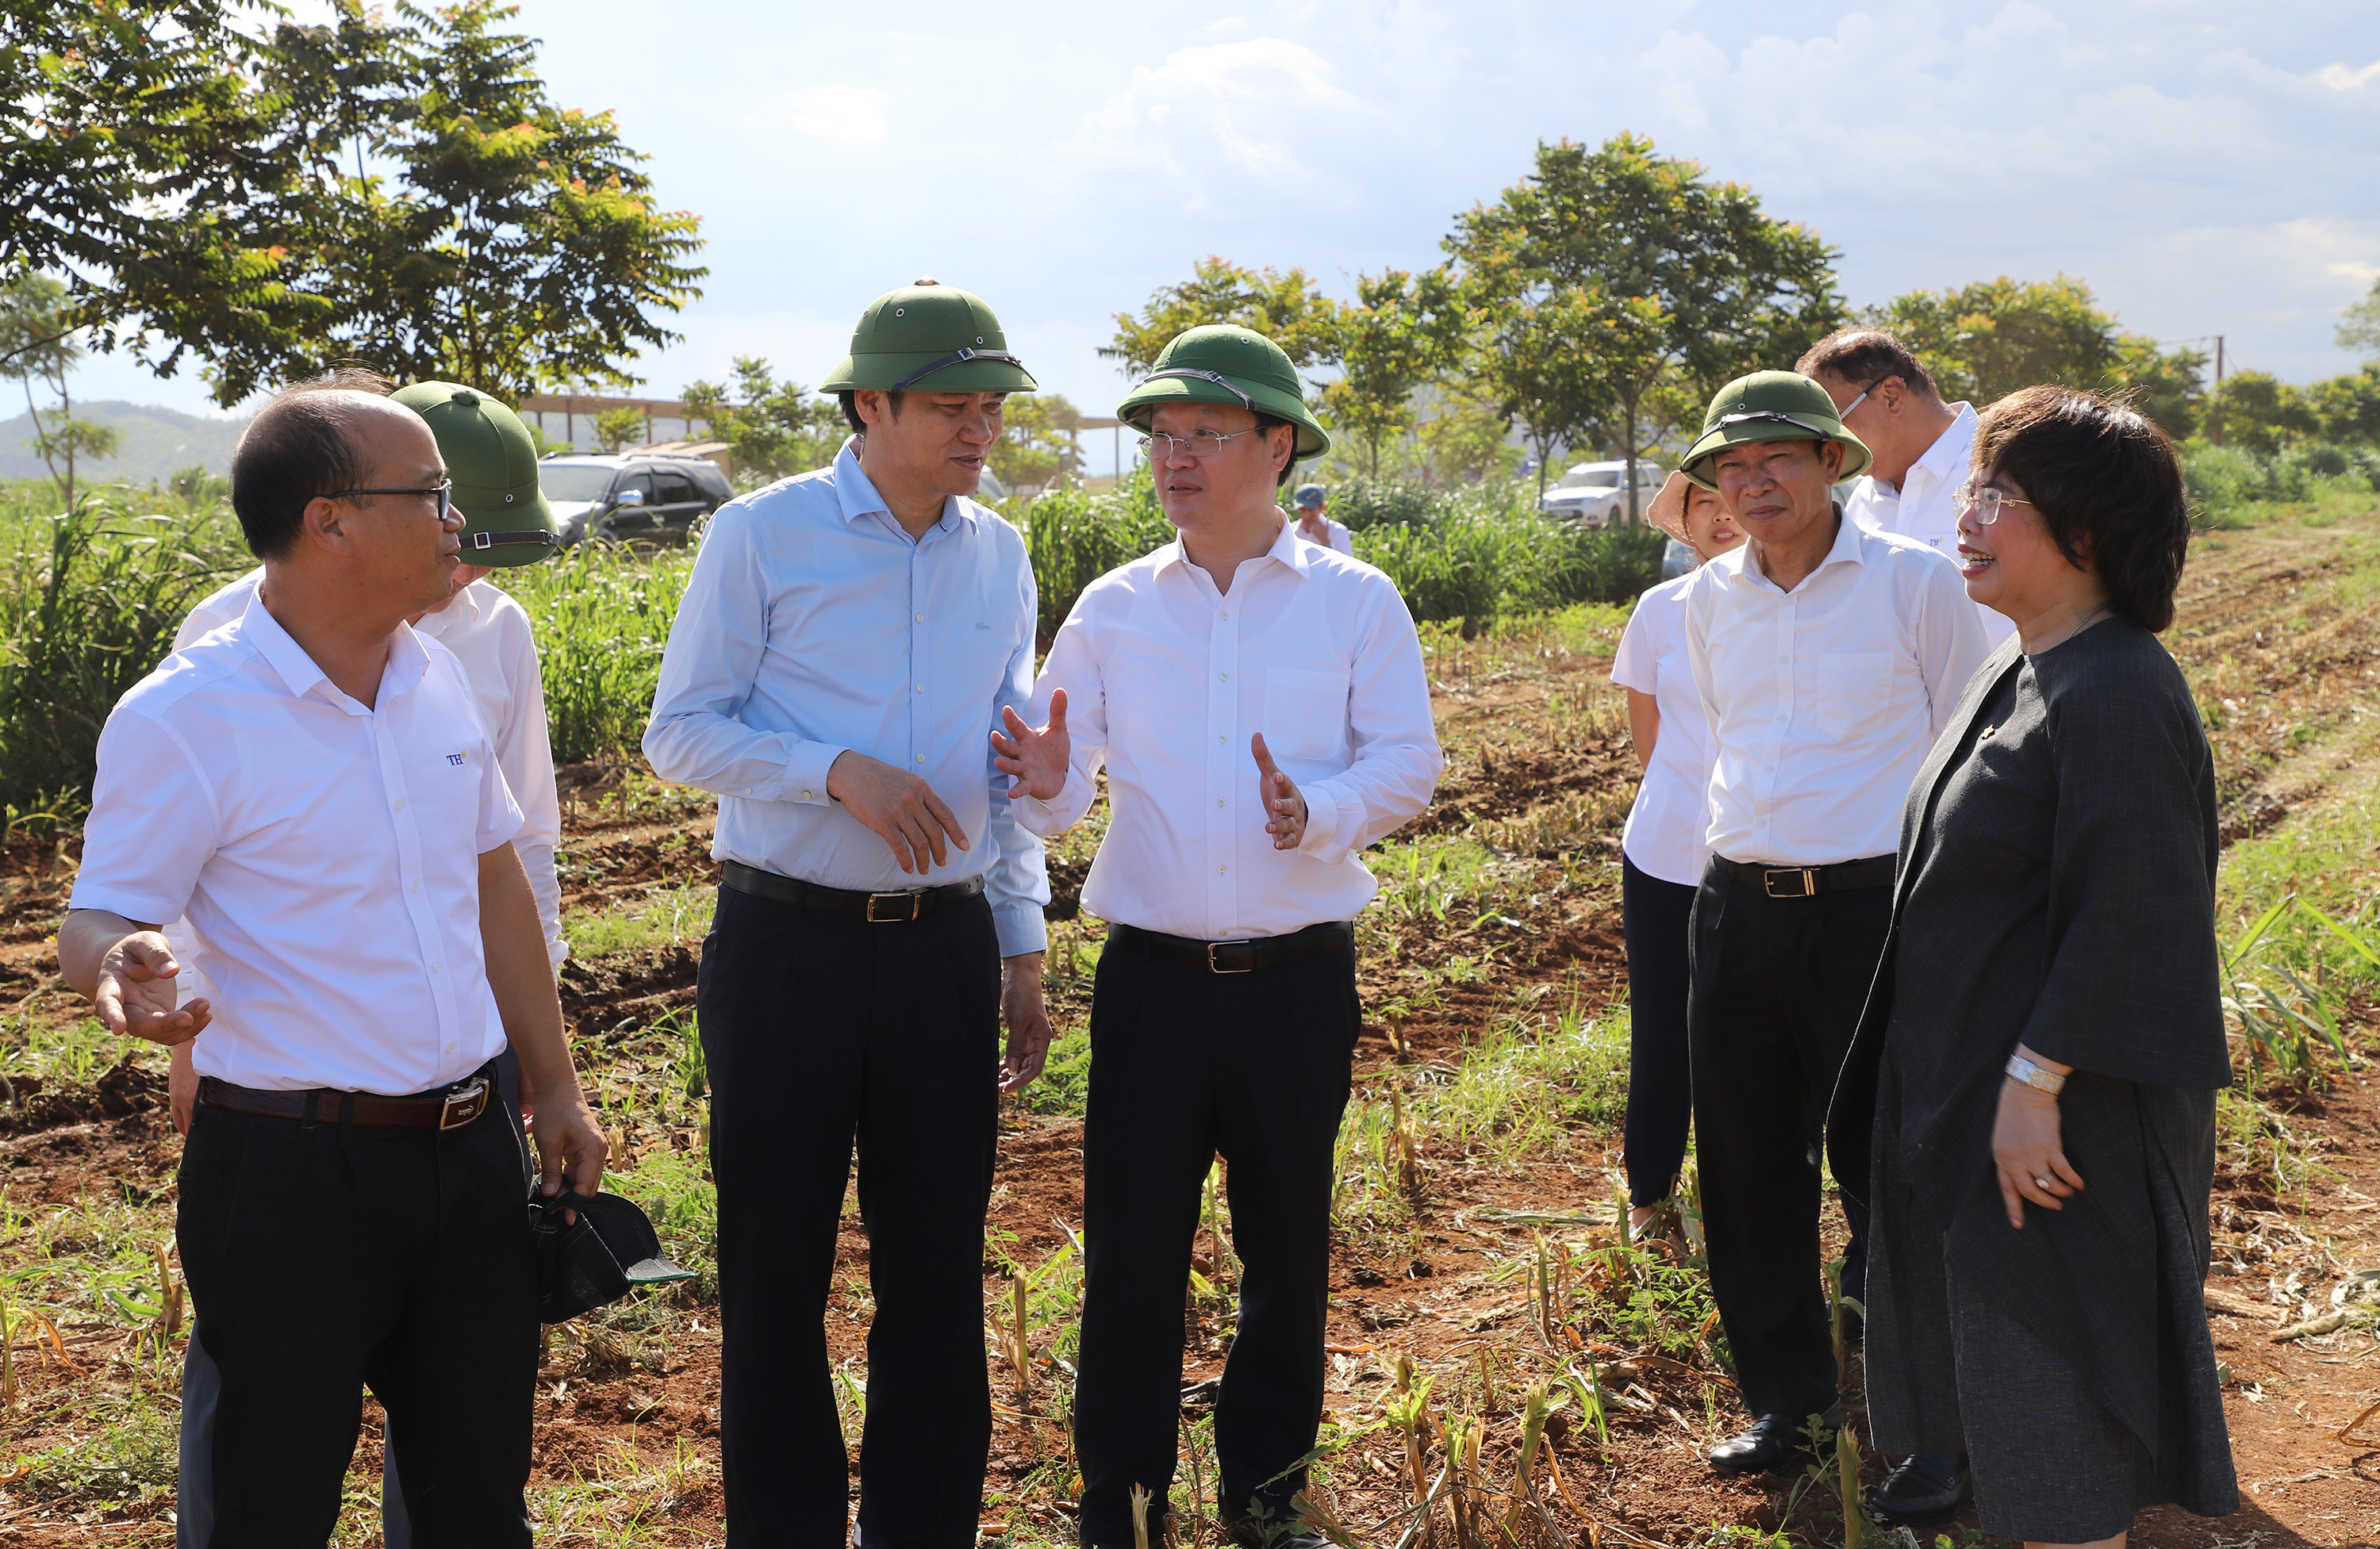 Đồng chí Nguyễn Đức Trung cùng đoàn cũng đã đến thăm quan cánh đồng trồng ngô sinh khối, cung cấp nguồn thức ăn cho bò của Tập đoàn T.H. Ảnh: Phạm Bằng